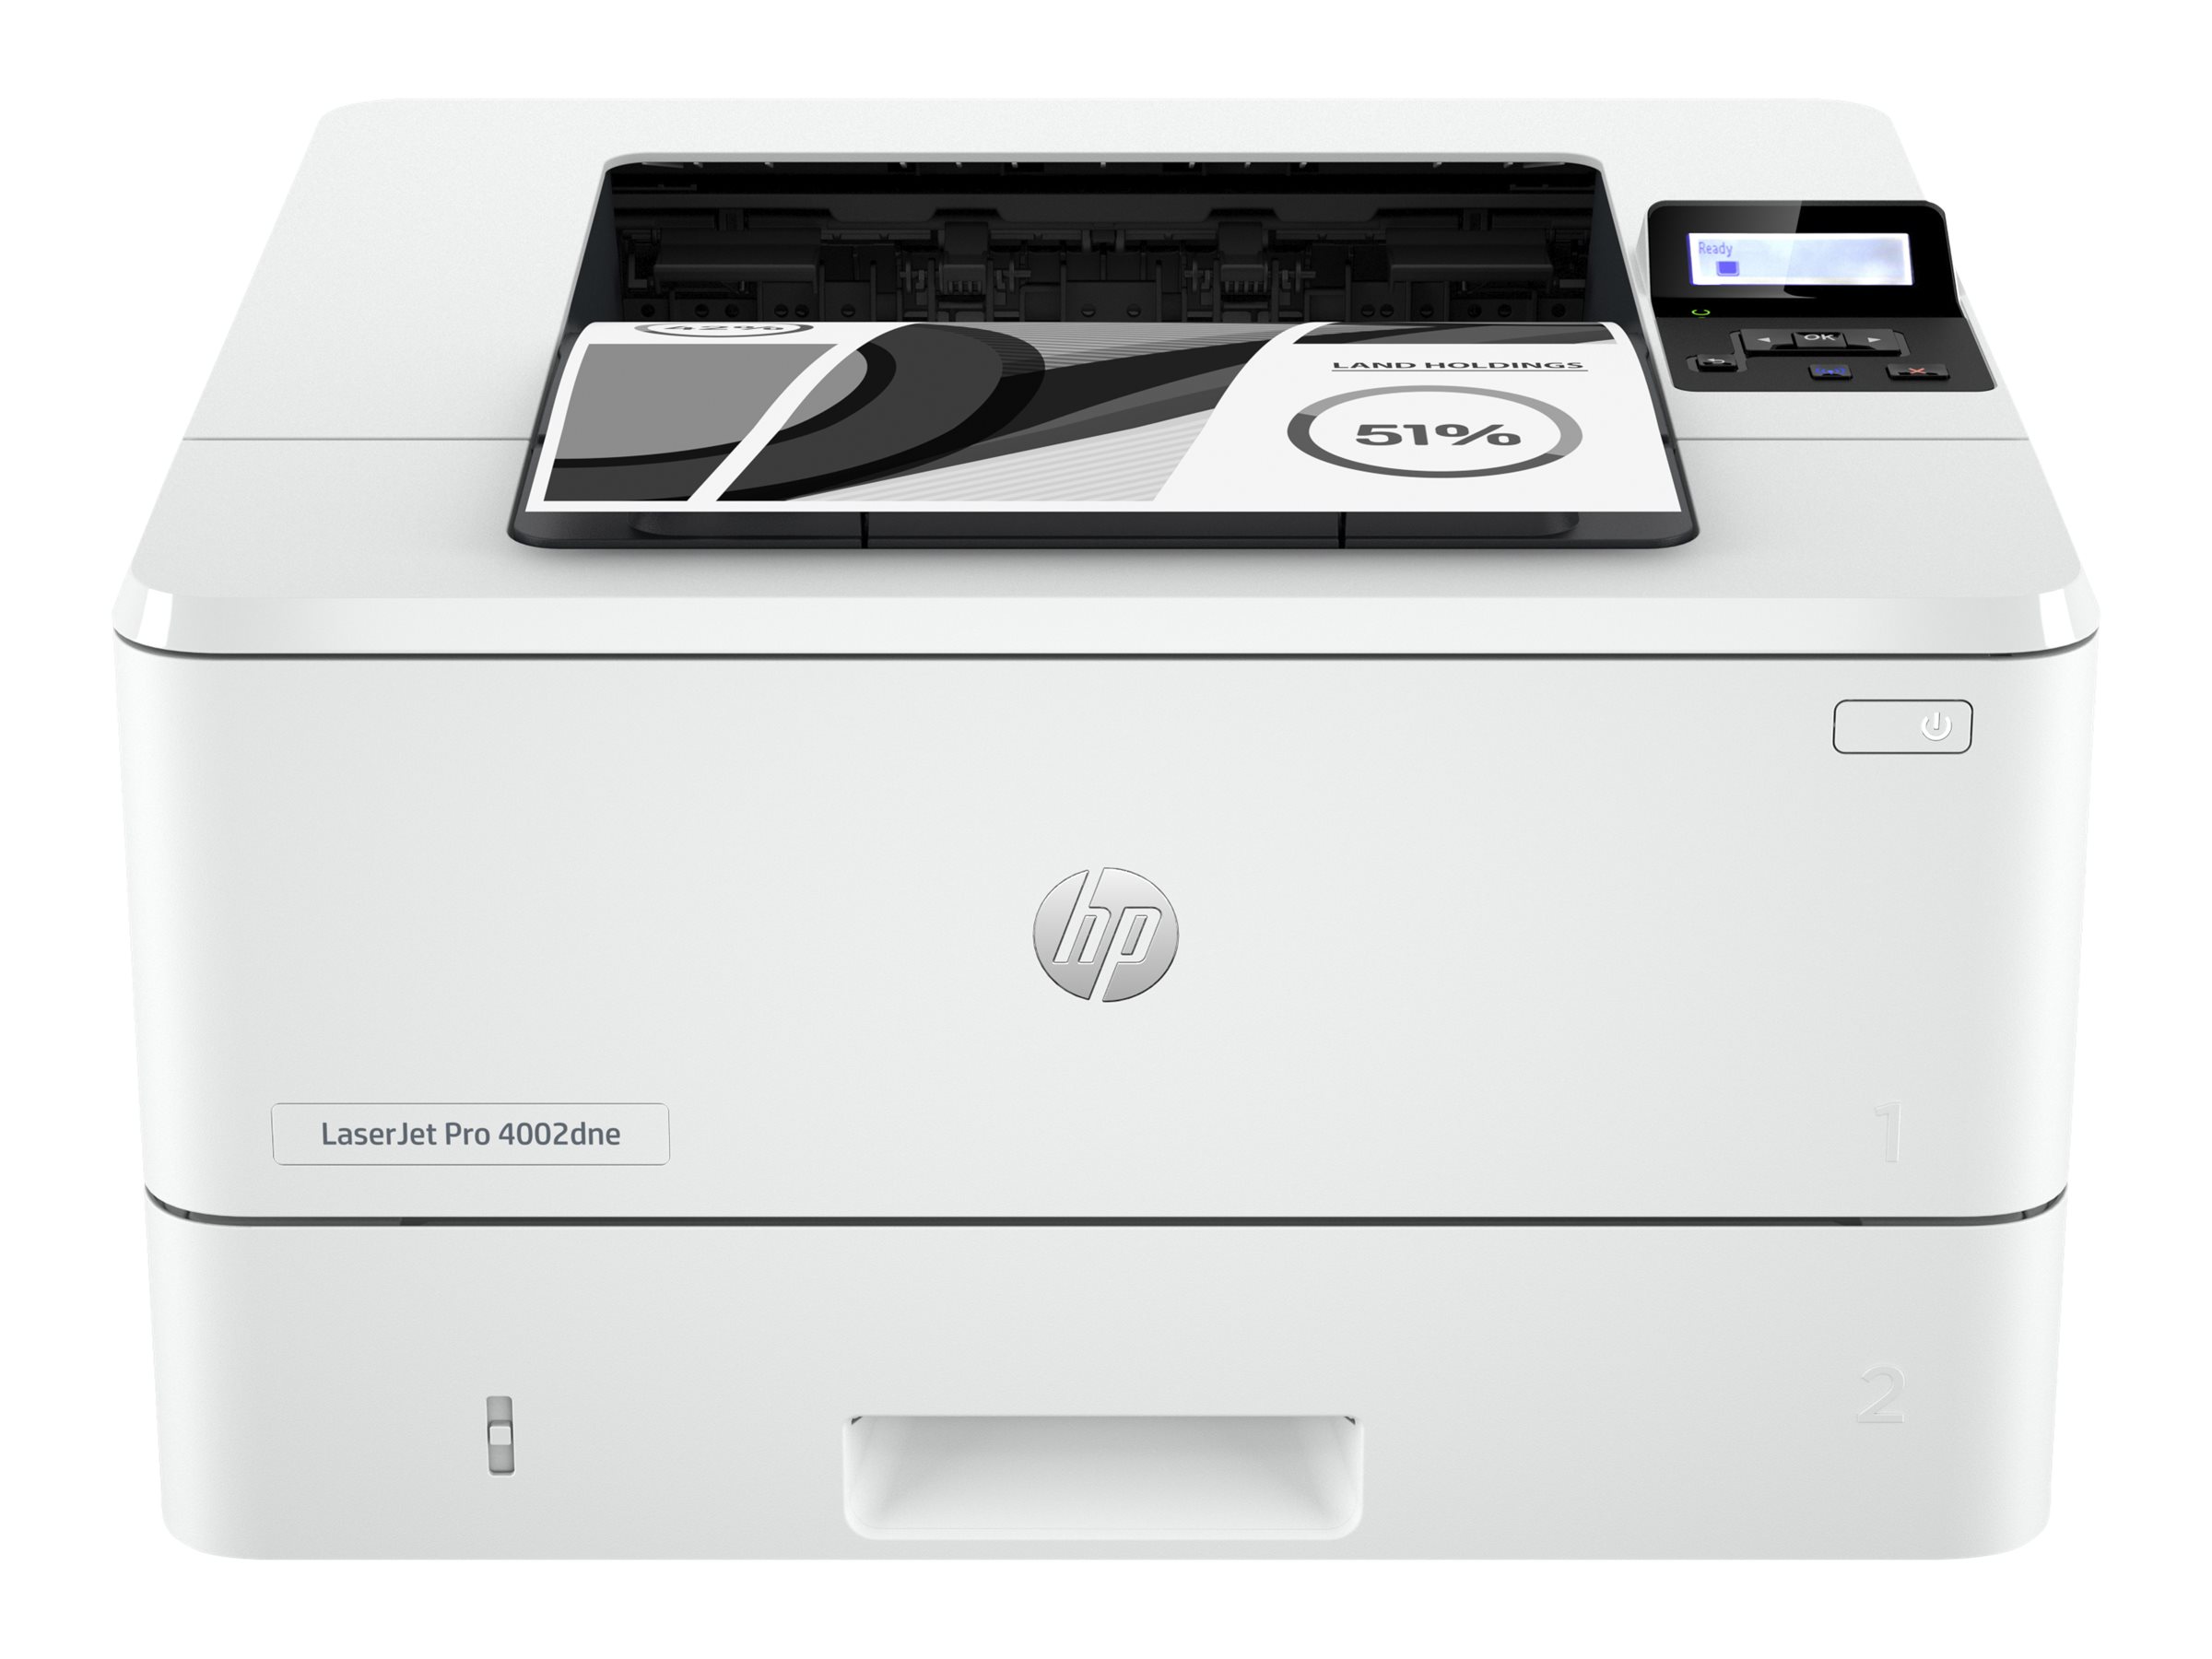 HP 2Z605E#B19  HP LaserJet Pro Stampante HP 4002dne, Bianco e nero, Stampante  per Piccole e medie imprese, Stampa, HP+; idonea per HP Instant Ink; stampa  da smartphone o tablet; stampa fronte/retro